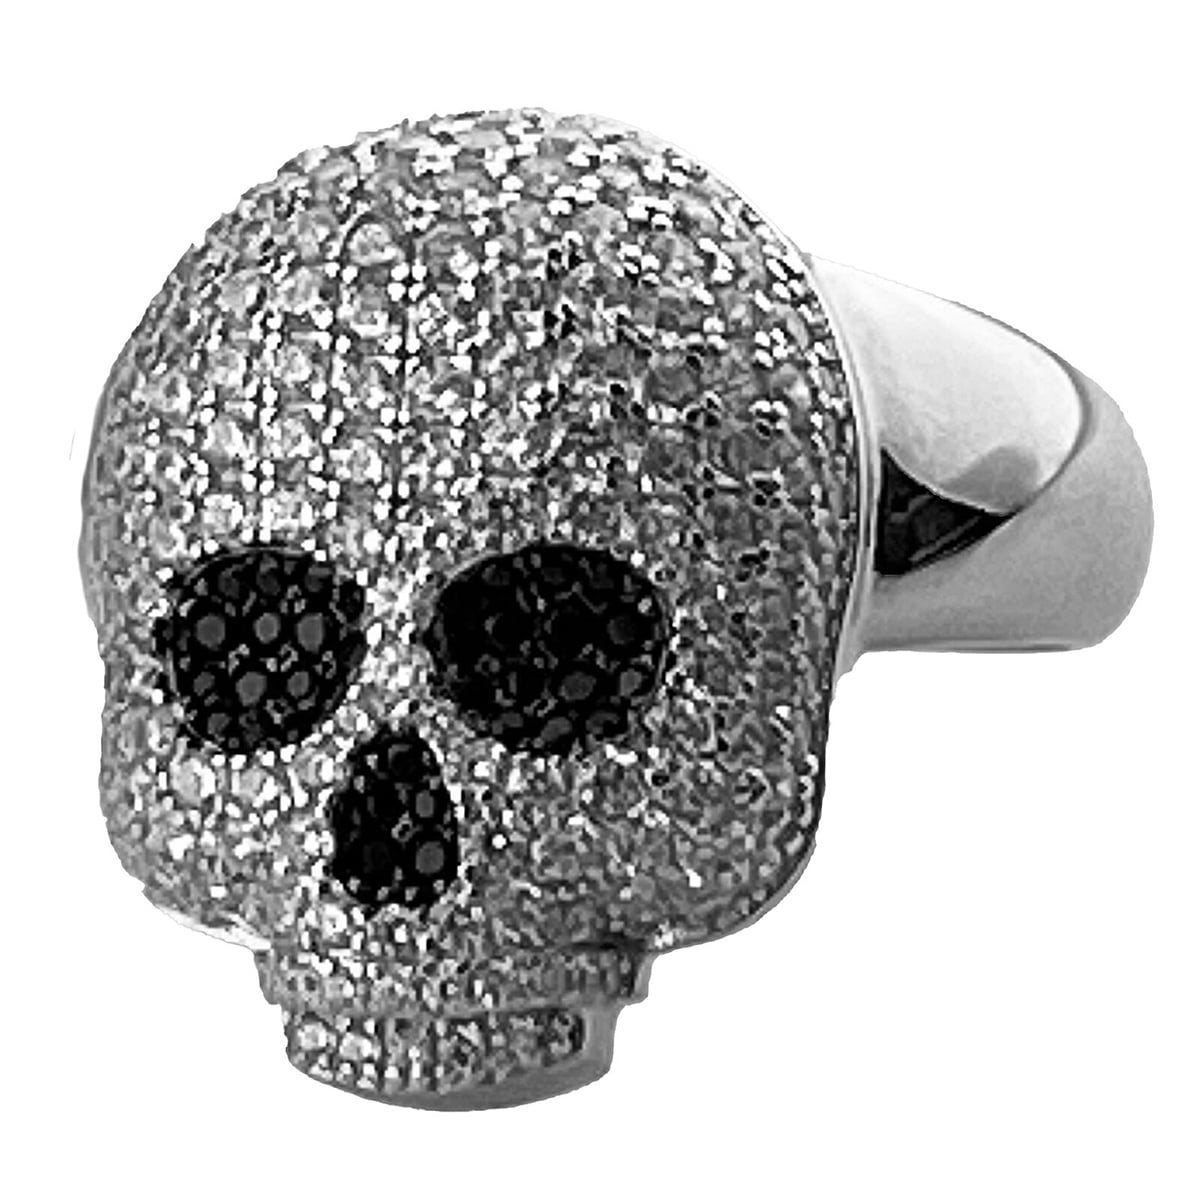 McSwain .925 Silver Skull Ring